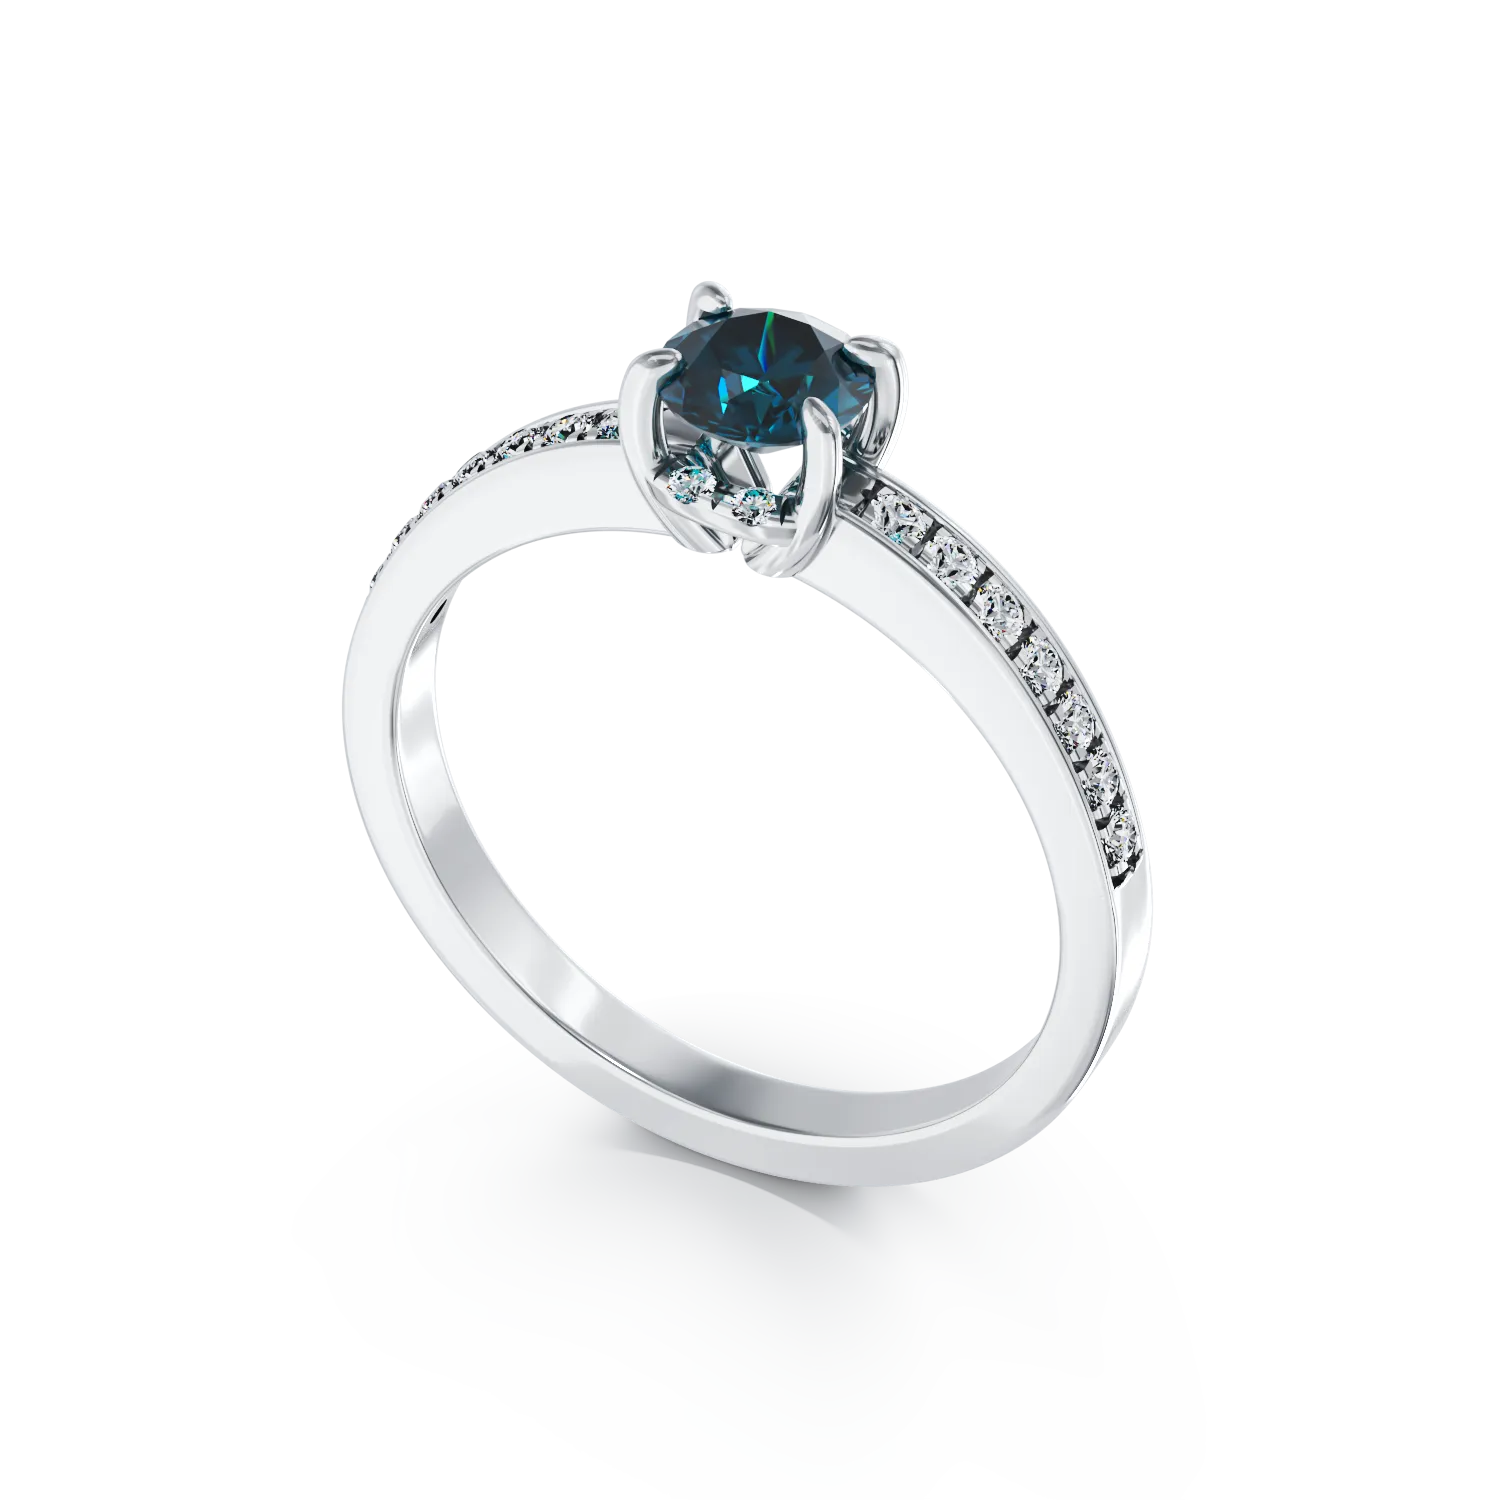 Eljegyzési gyűrű 18K-os fehér aranyból 0,44ct kék gyémánttal és 0,2ct gyémánttal